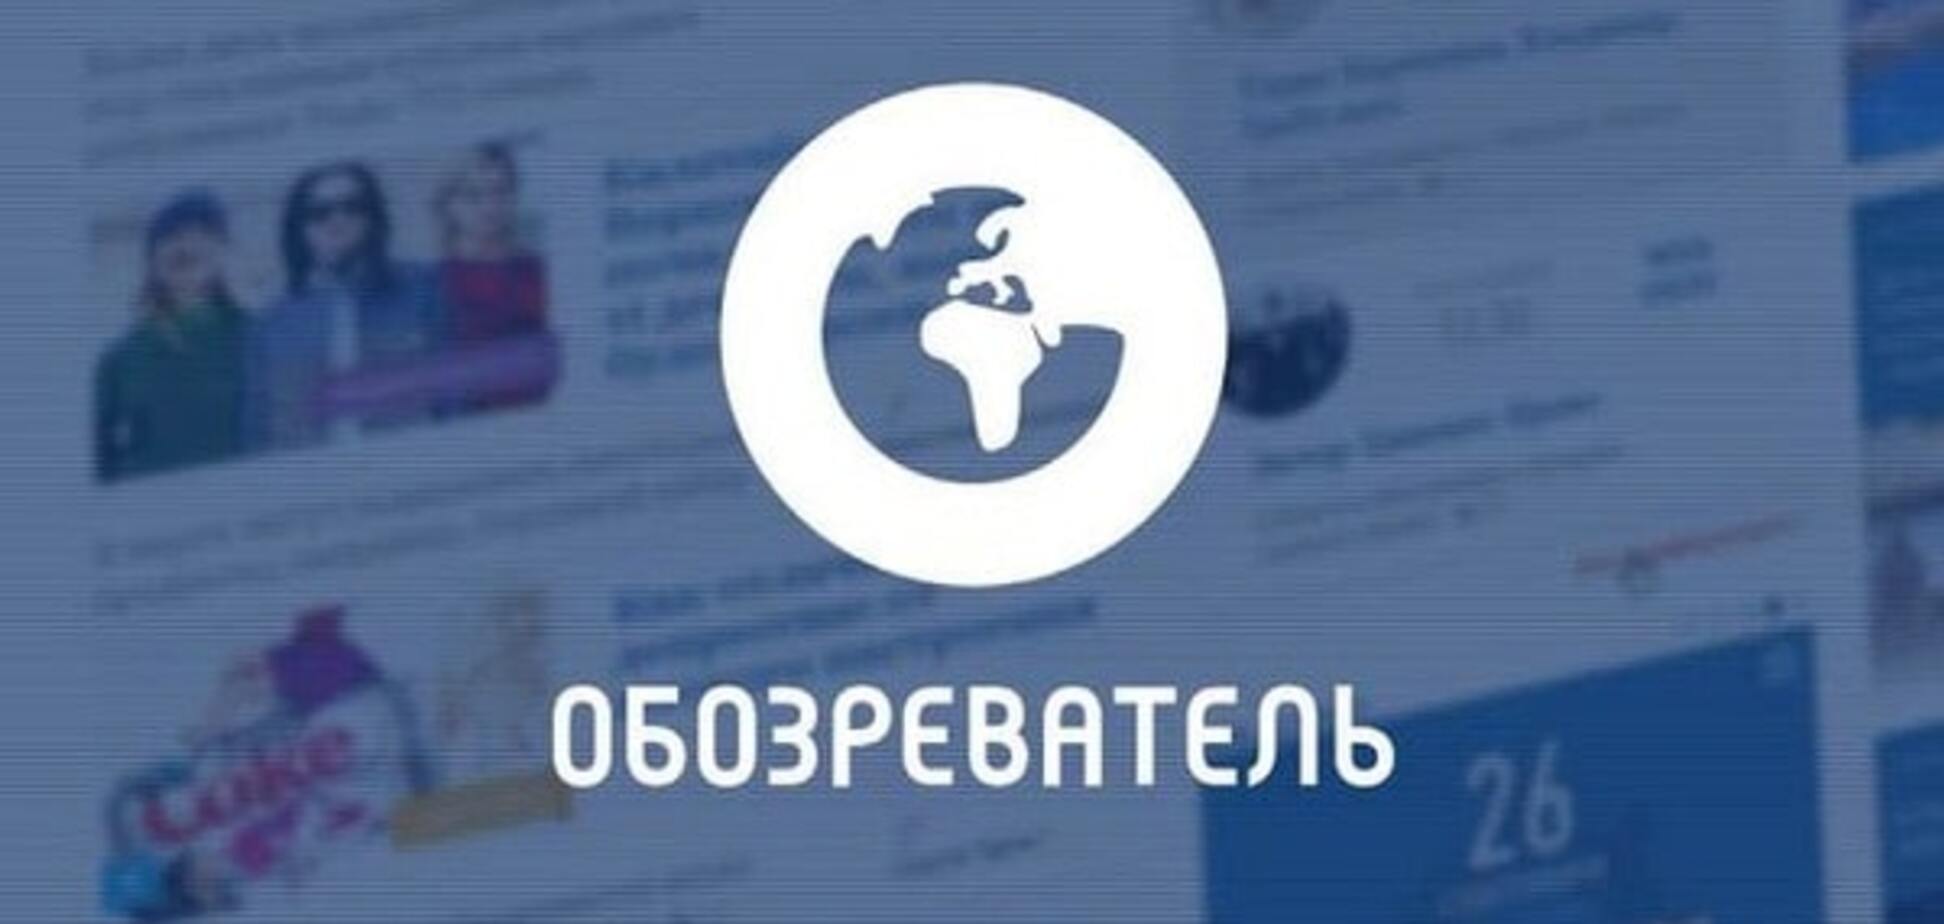 'Защищают детей': в 'ЛНР' заблокировали 'Обозреватель' и еще 112 сайтов. Опубликован полный список